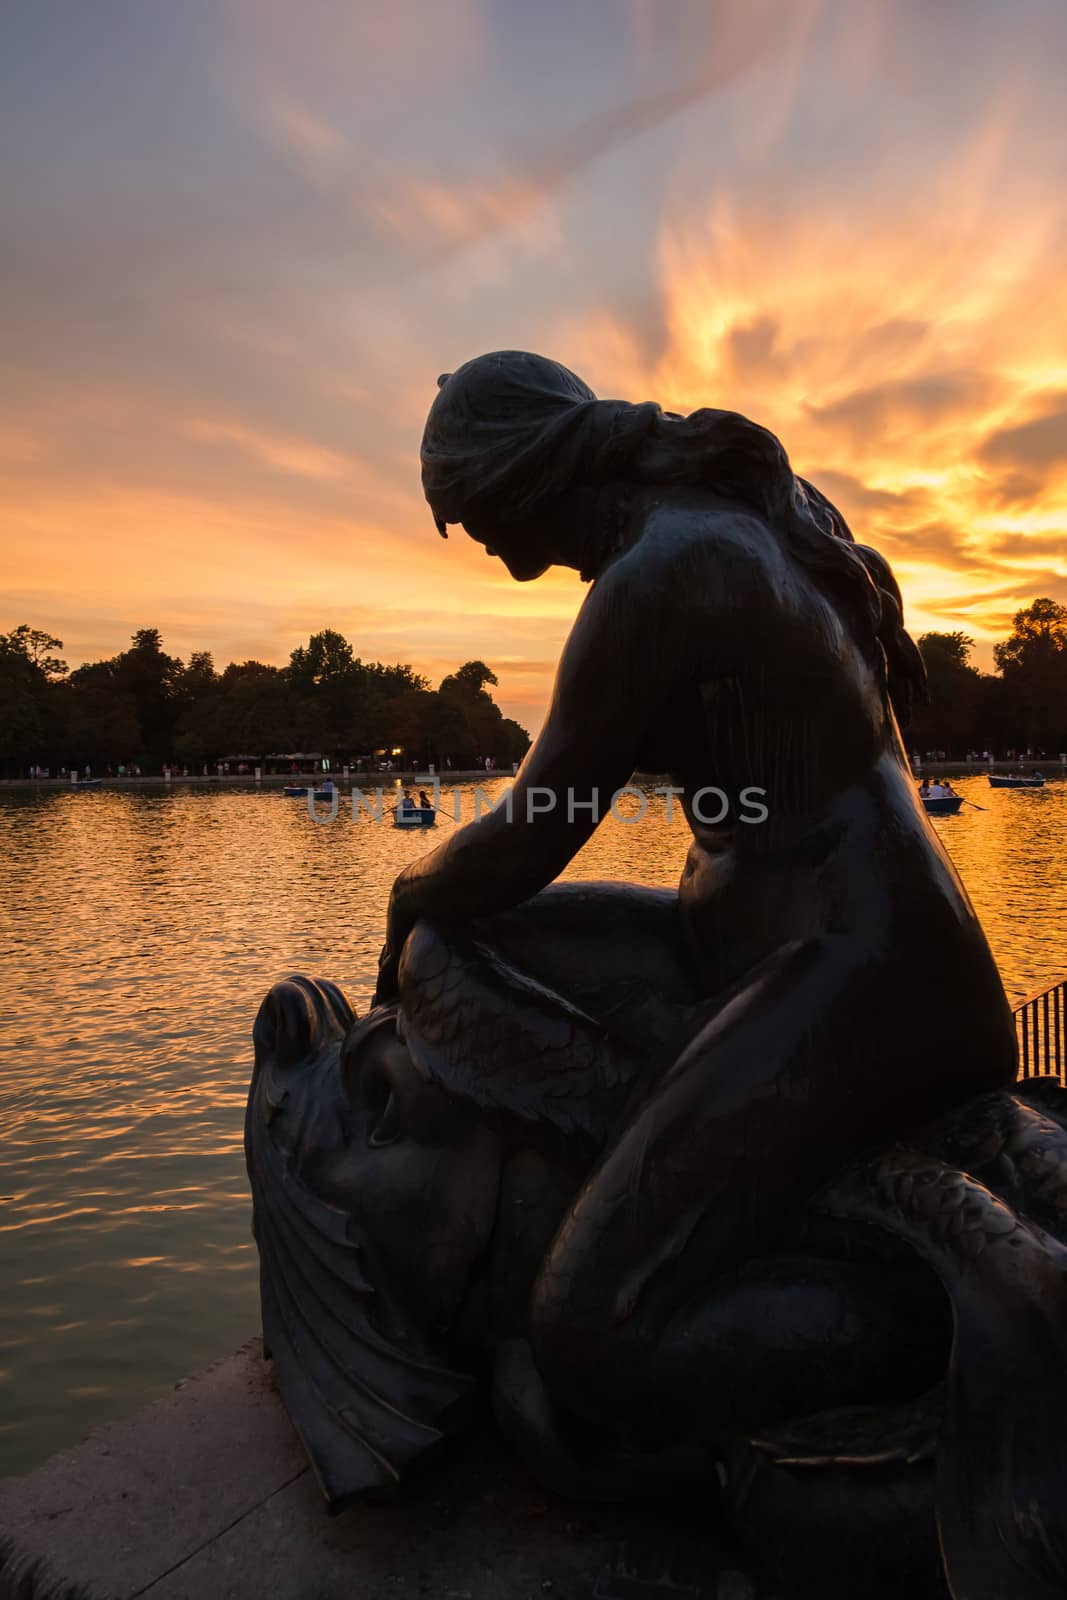 Female sculpture in Buen Retiro park lake, Madrid by doble.d